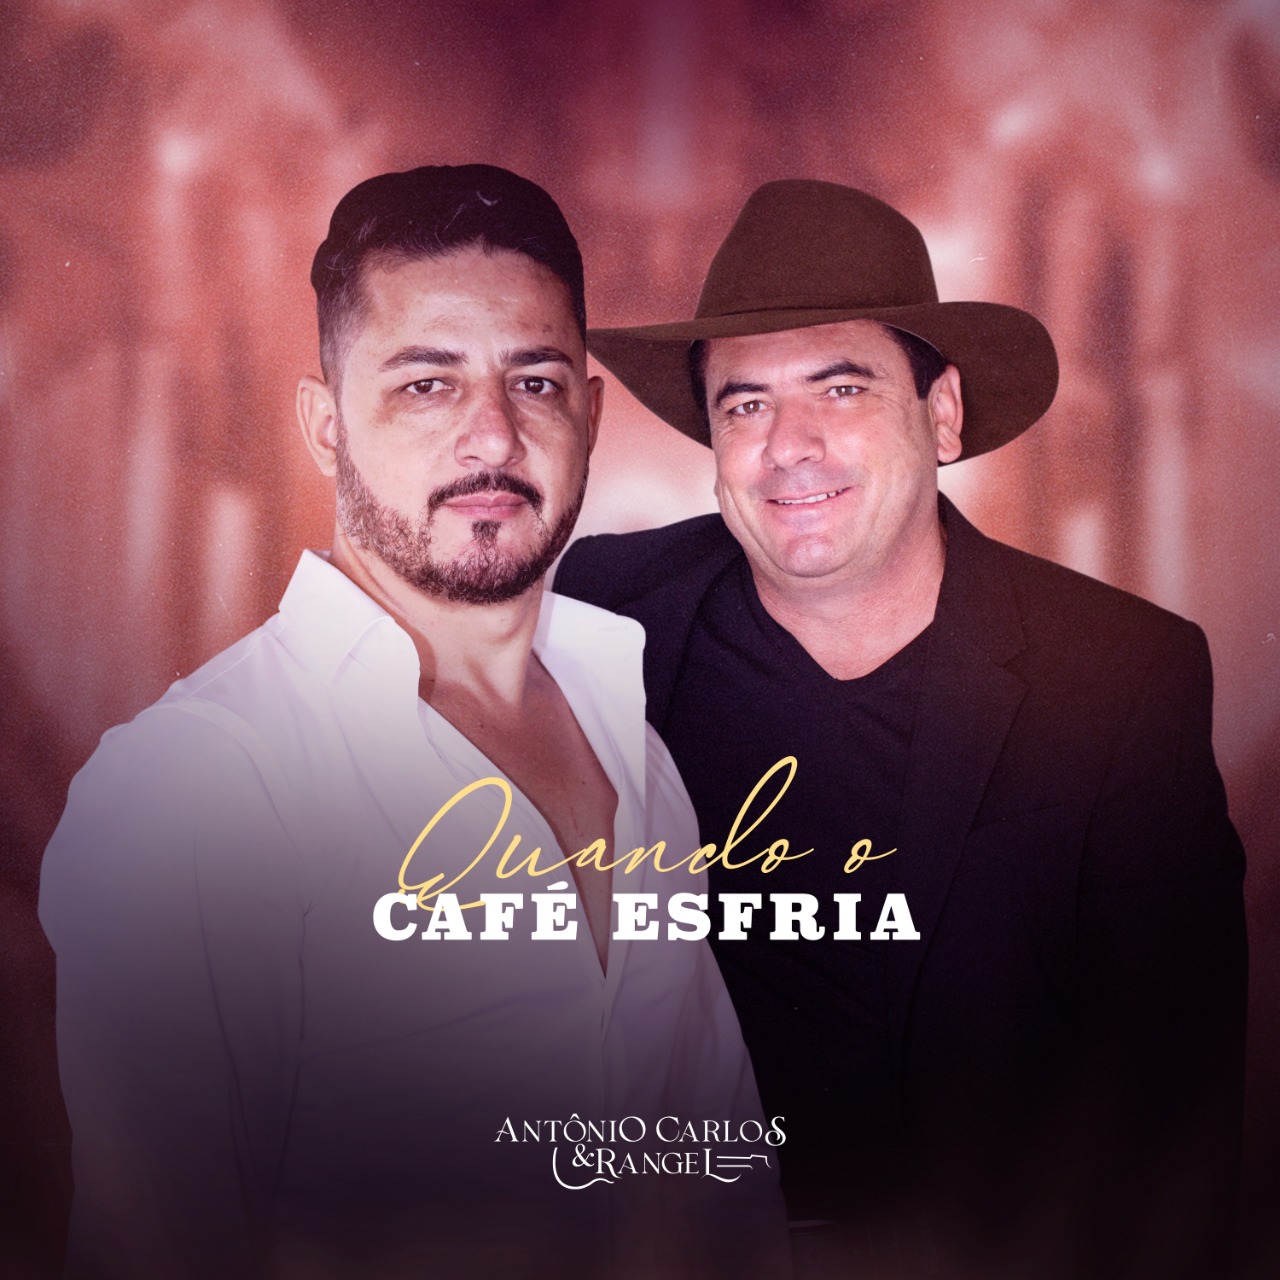 Antonio Carlos e Rangel lançam o single "Quando o café esfria" 42